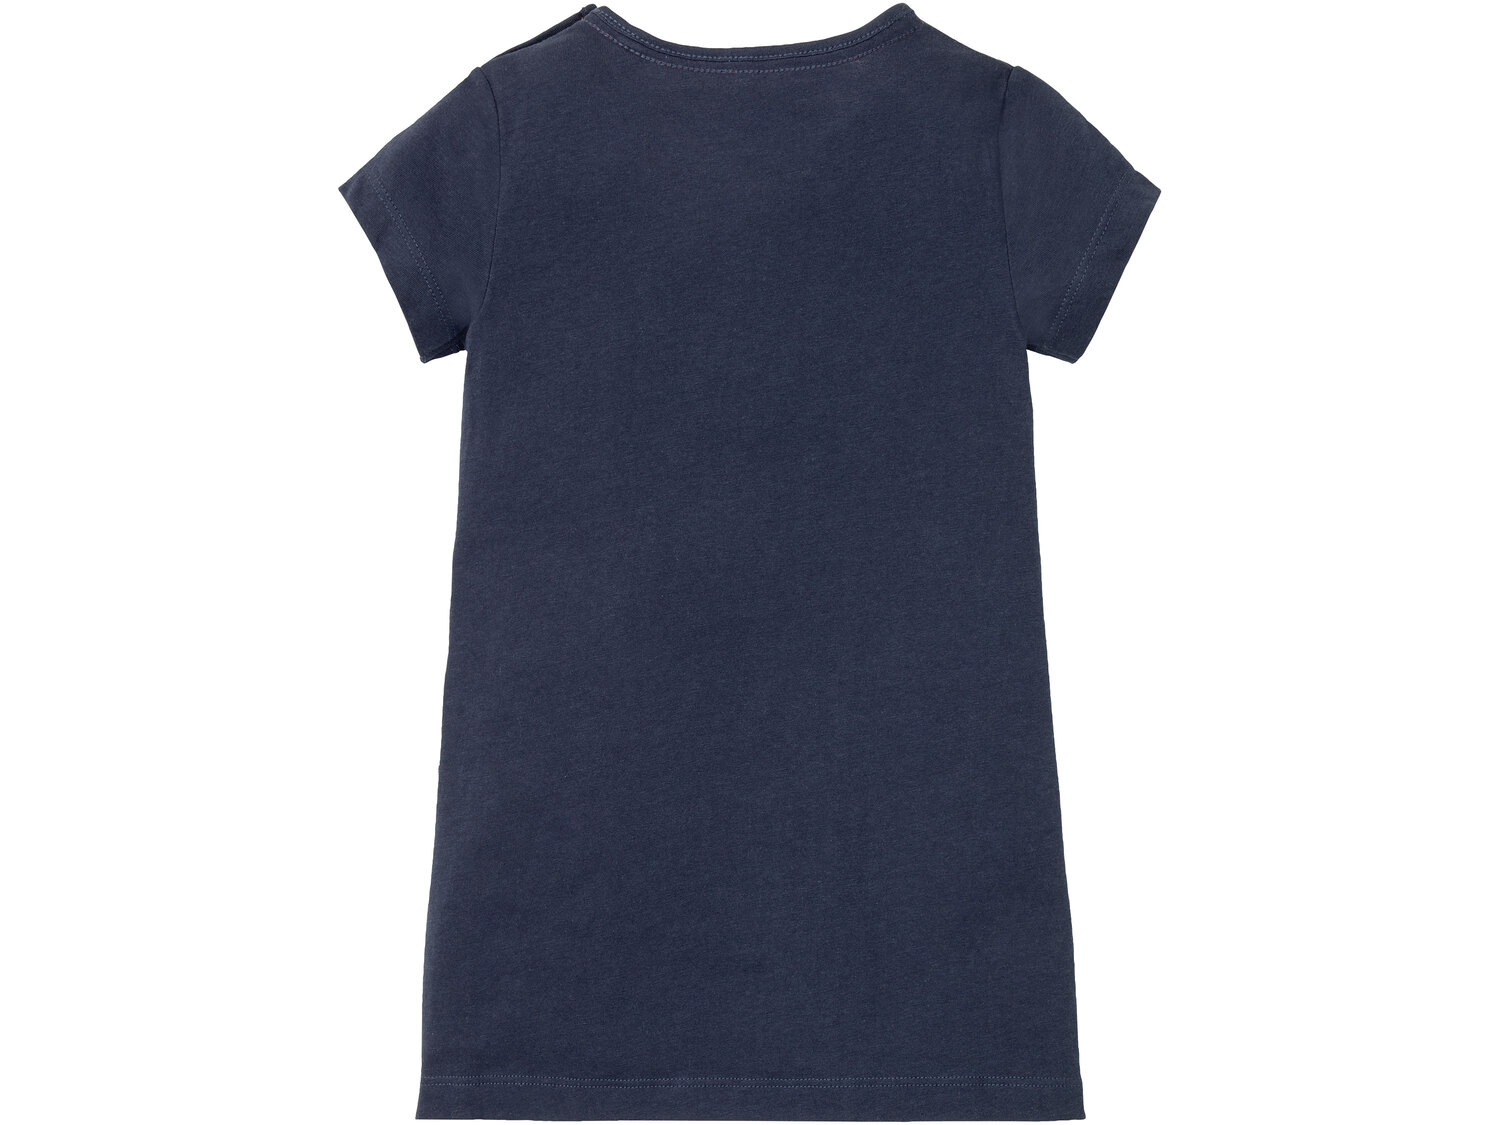 Koszulka nocna z bawełny , cena 14,99 PLN 
- rozmiary: 86-116
- 100% bawełny
Dostępne ...